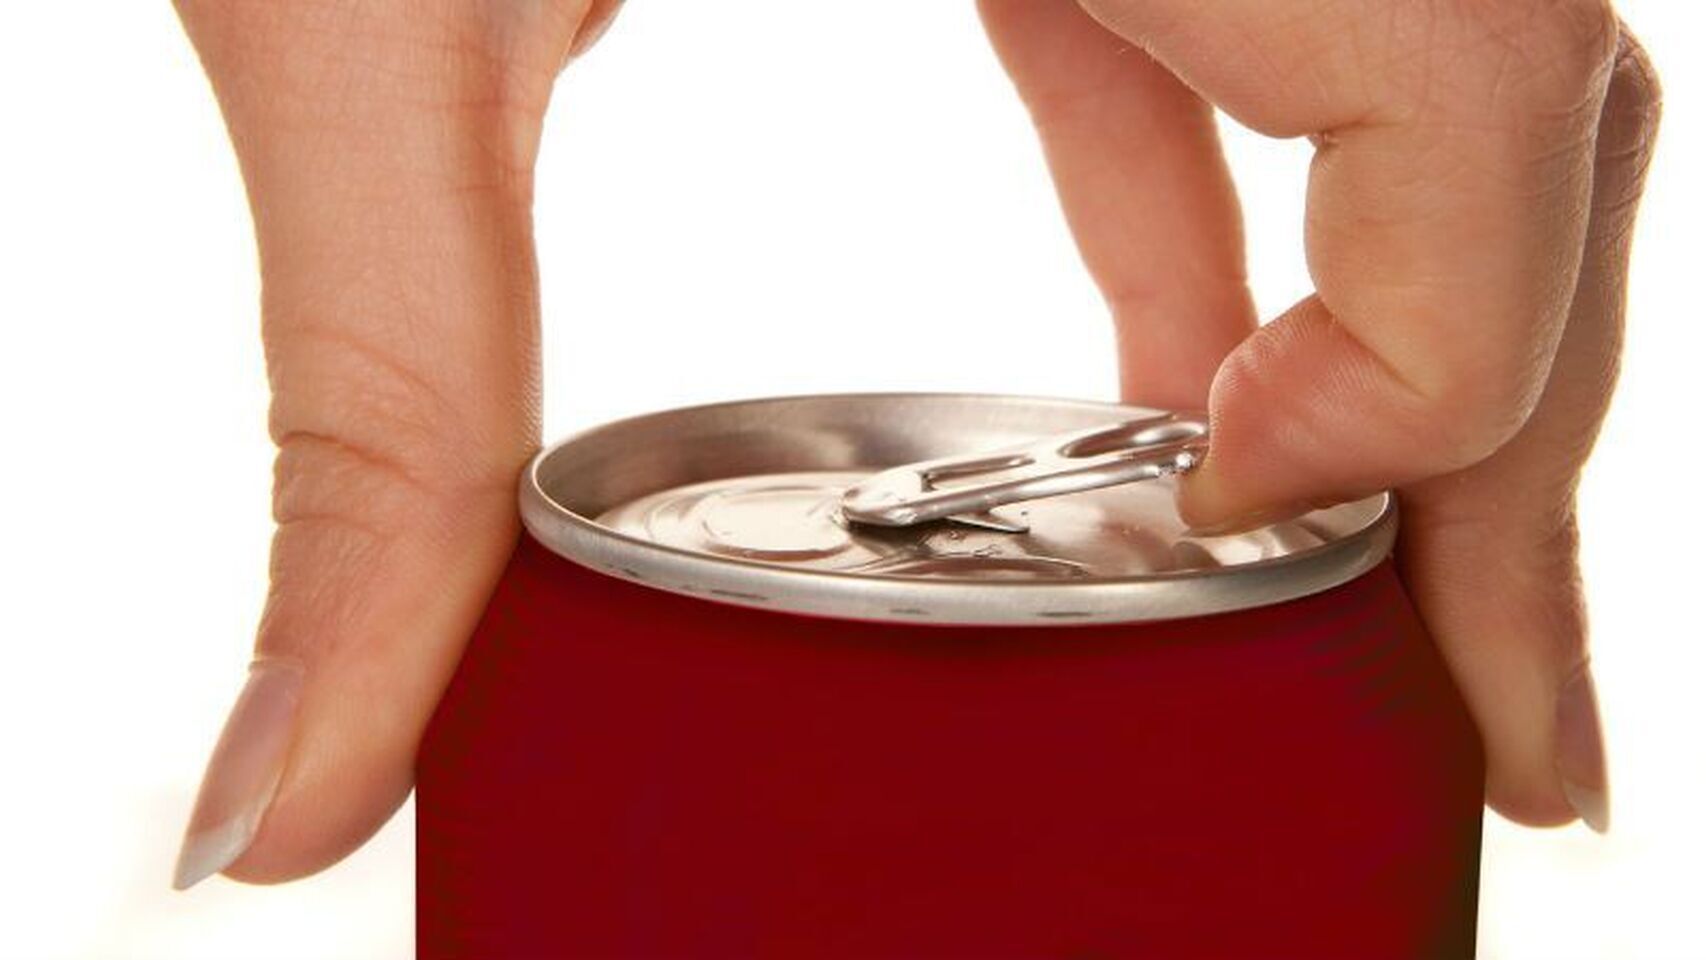 Una mujer utiliza la anilla para abrir la lata, pero, además, podría usarla para otro fin.